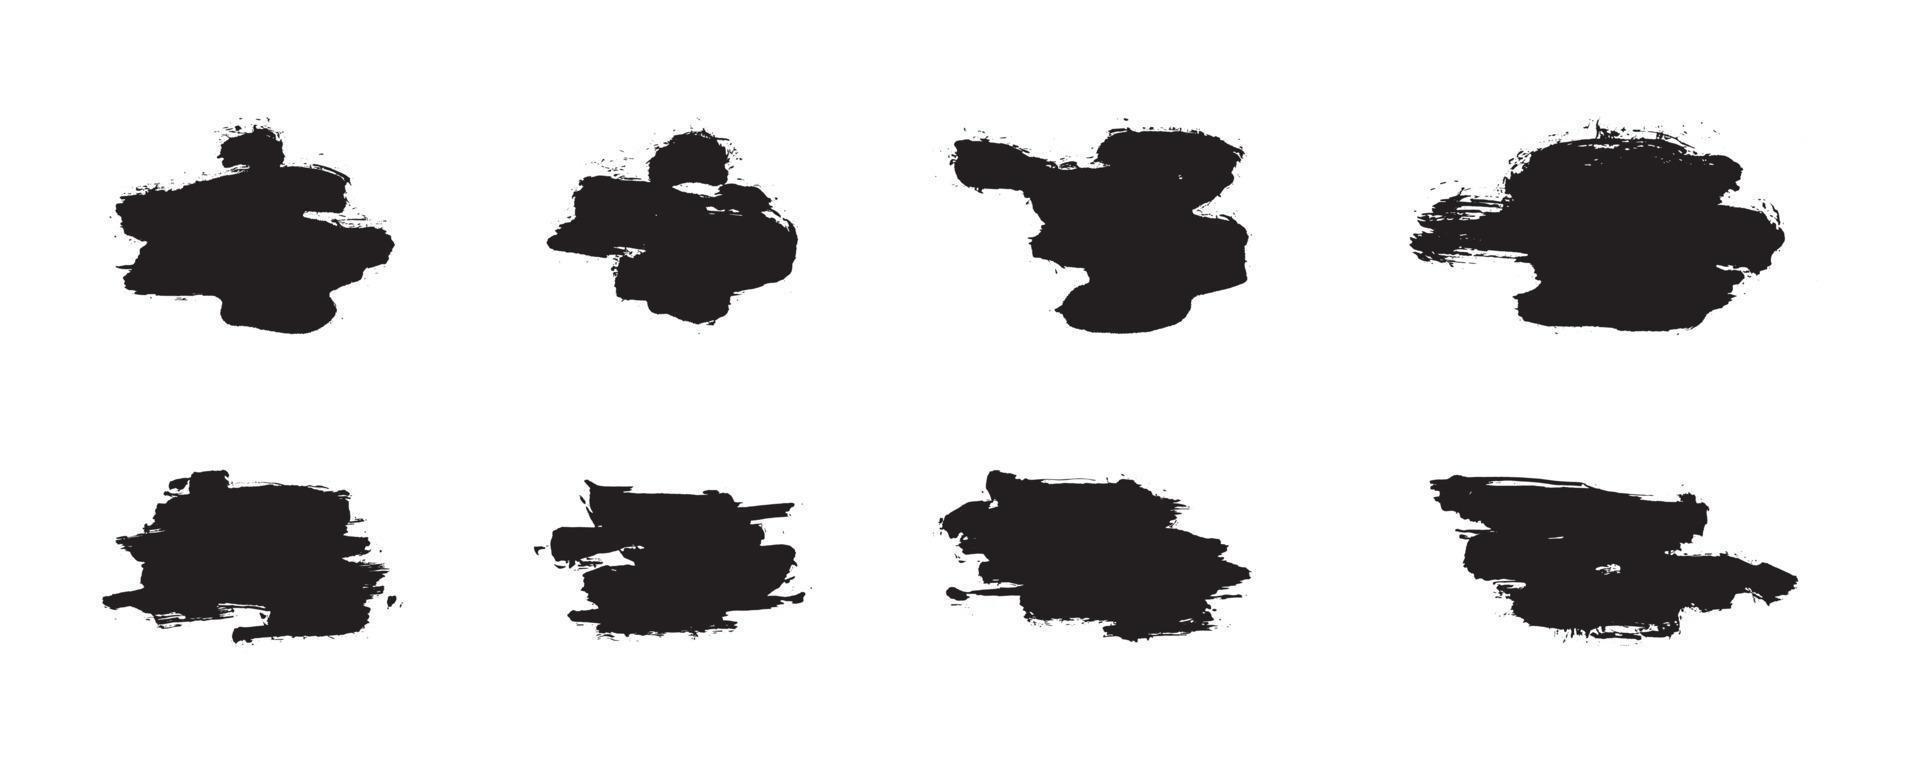 trazos de pincel abstracto de estilo chino. conjunto de trazos de tinta negra sobre papel blanco. elementos de diseño gráfico para espacio de copia, tercio inferior, efecto de texto, pincel vectorial, etc. vector